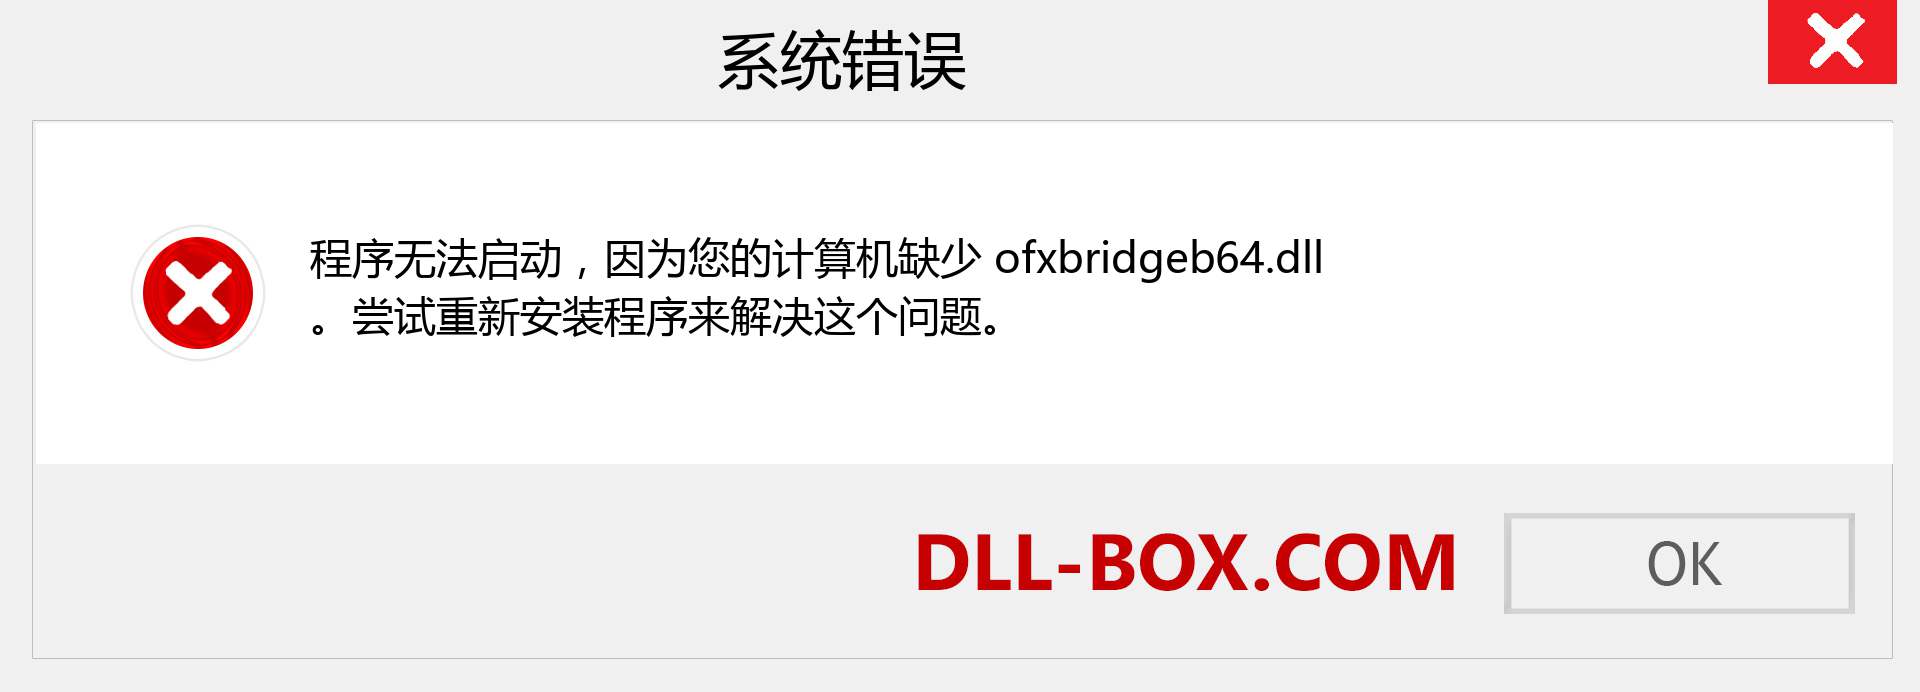 ofxbridgeb64.dll 文件丢失？。 适用于 Windows 7、8、10 的下载 - 修复 Windows、照片、图像上的 ofxbridgeb64 dll 丢失错误